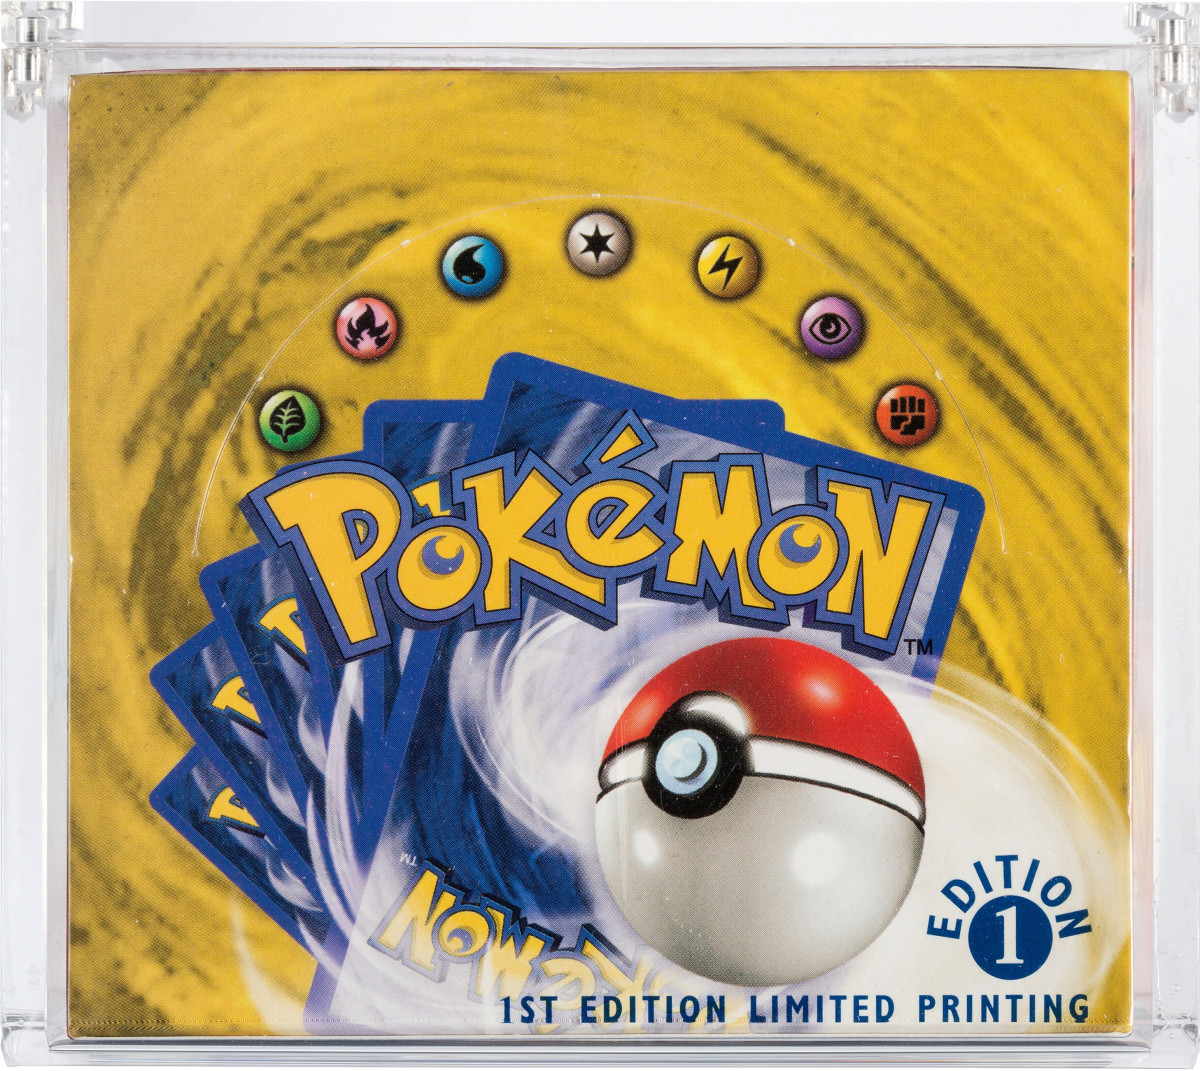 Pokémon booster set, 1st edition